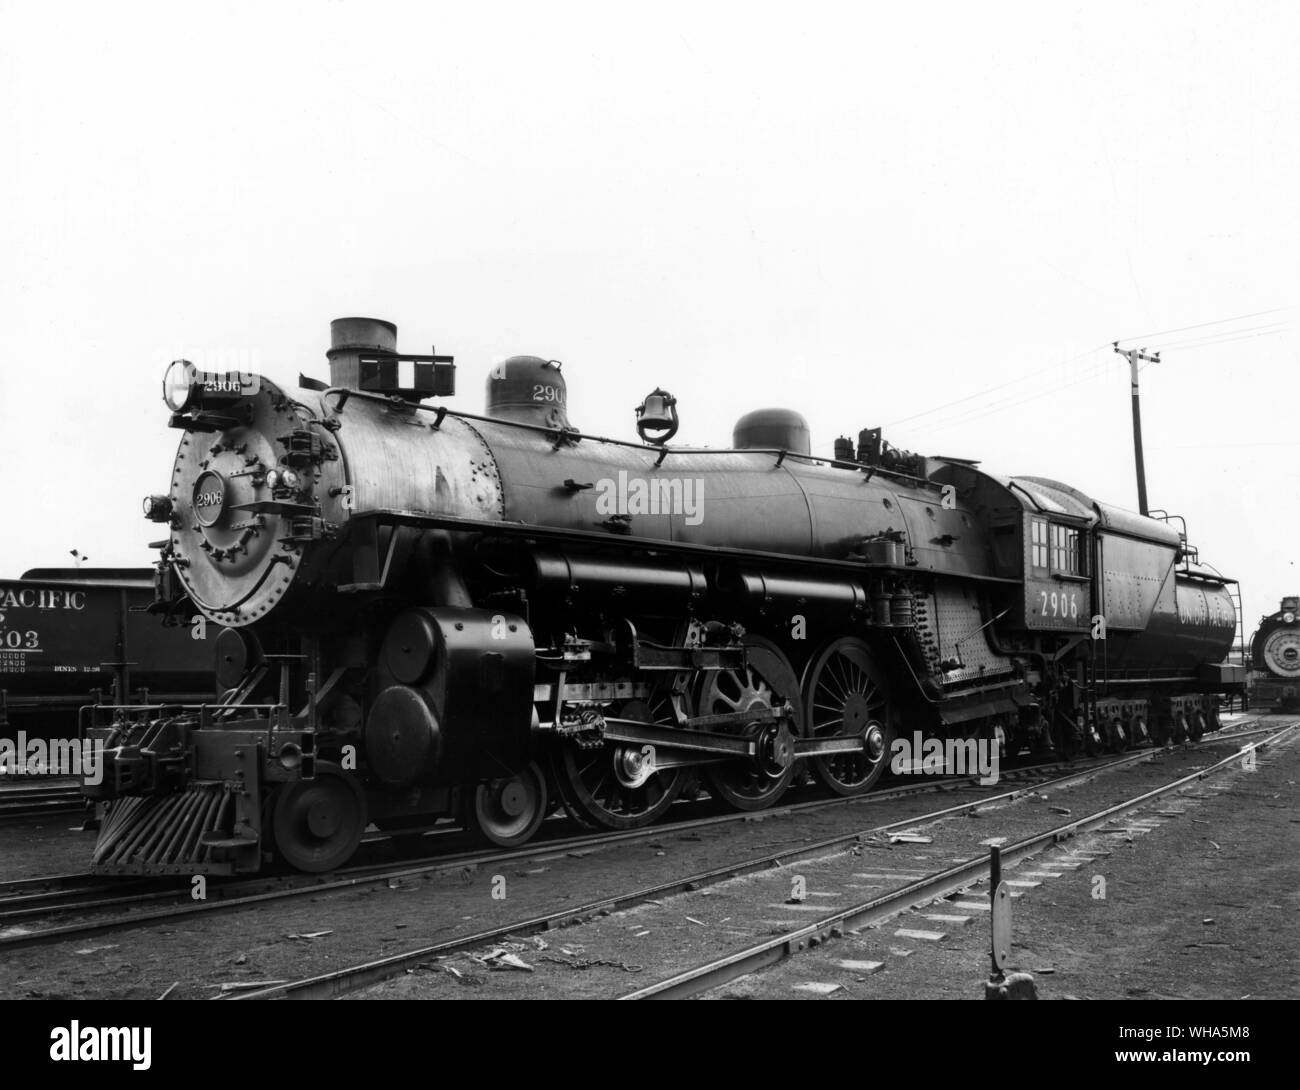 Union Pacific. Locomotora de vapor clase del Pacífico. 4-6-2 acuerdo rueda P designación de clase. La primera de tipo construido en 1904 para el servicio de pasajeros Foto de stock